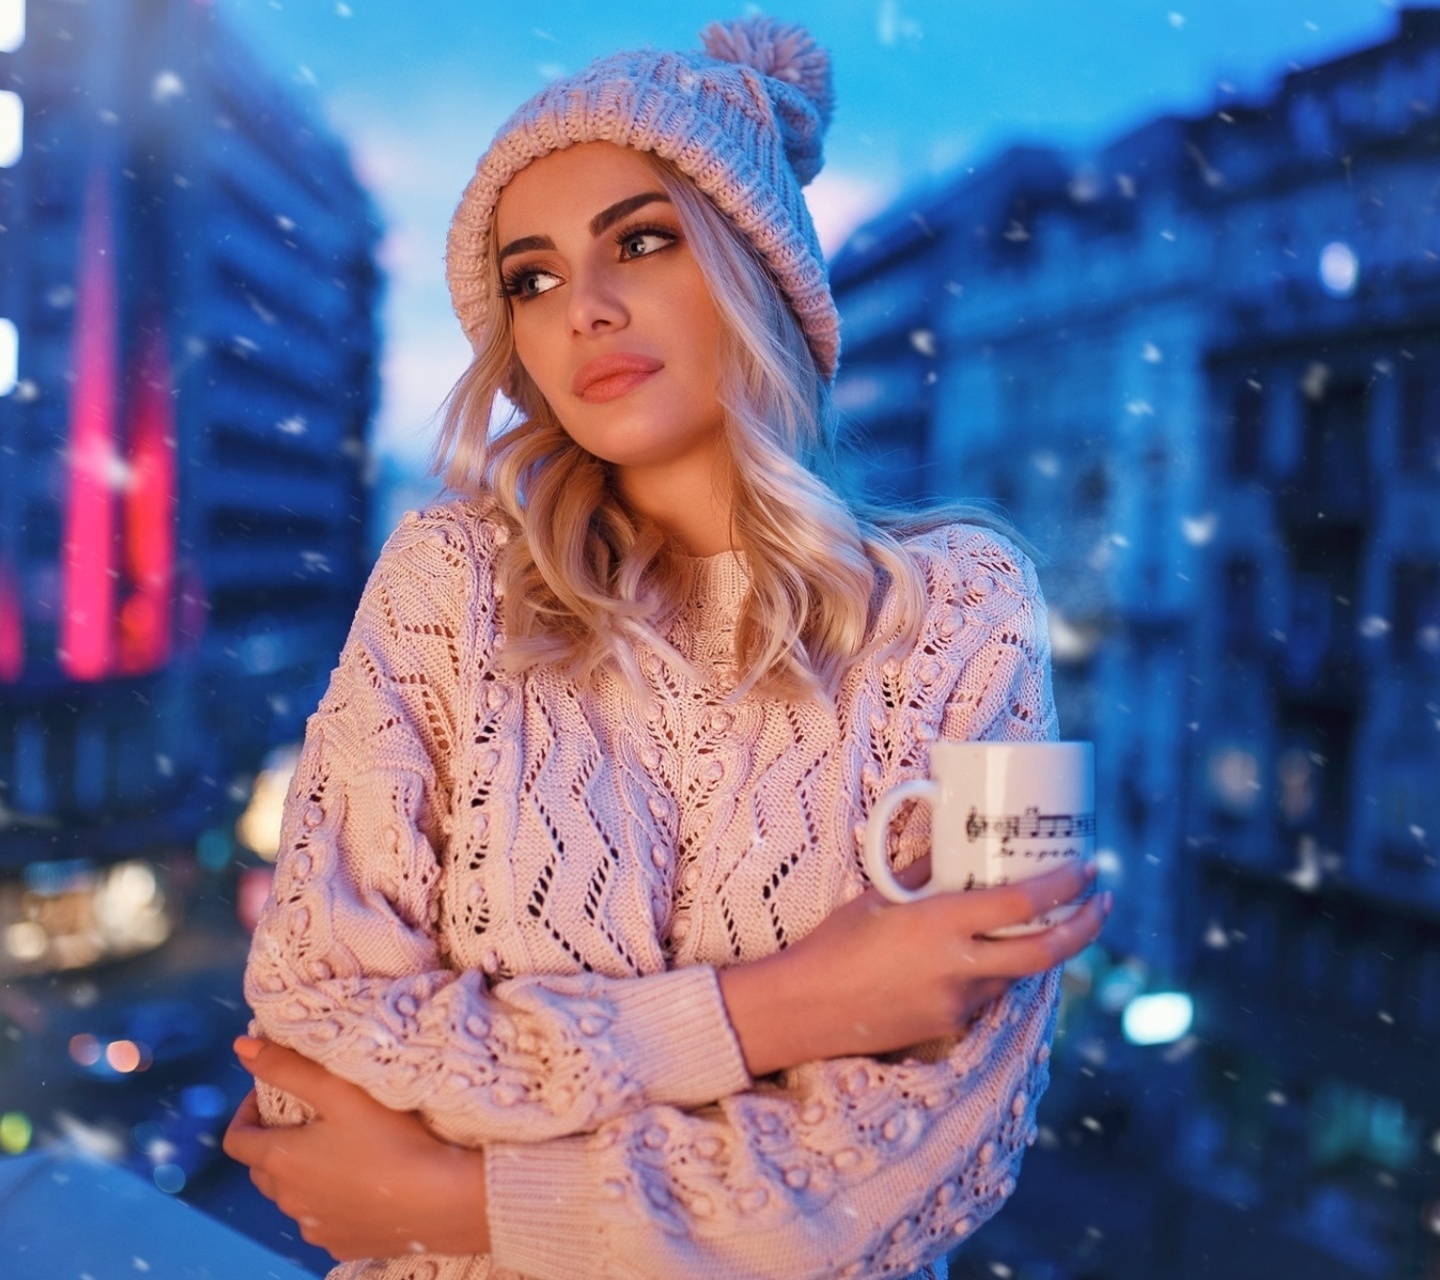 Winter stylish woman wallpaper 1440x1280